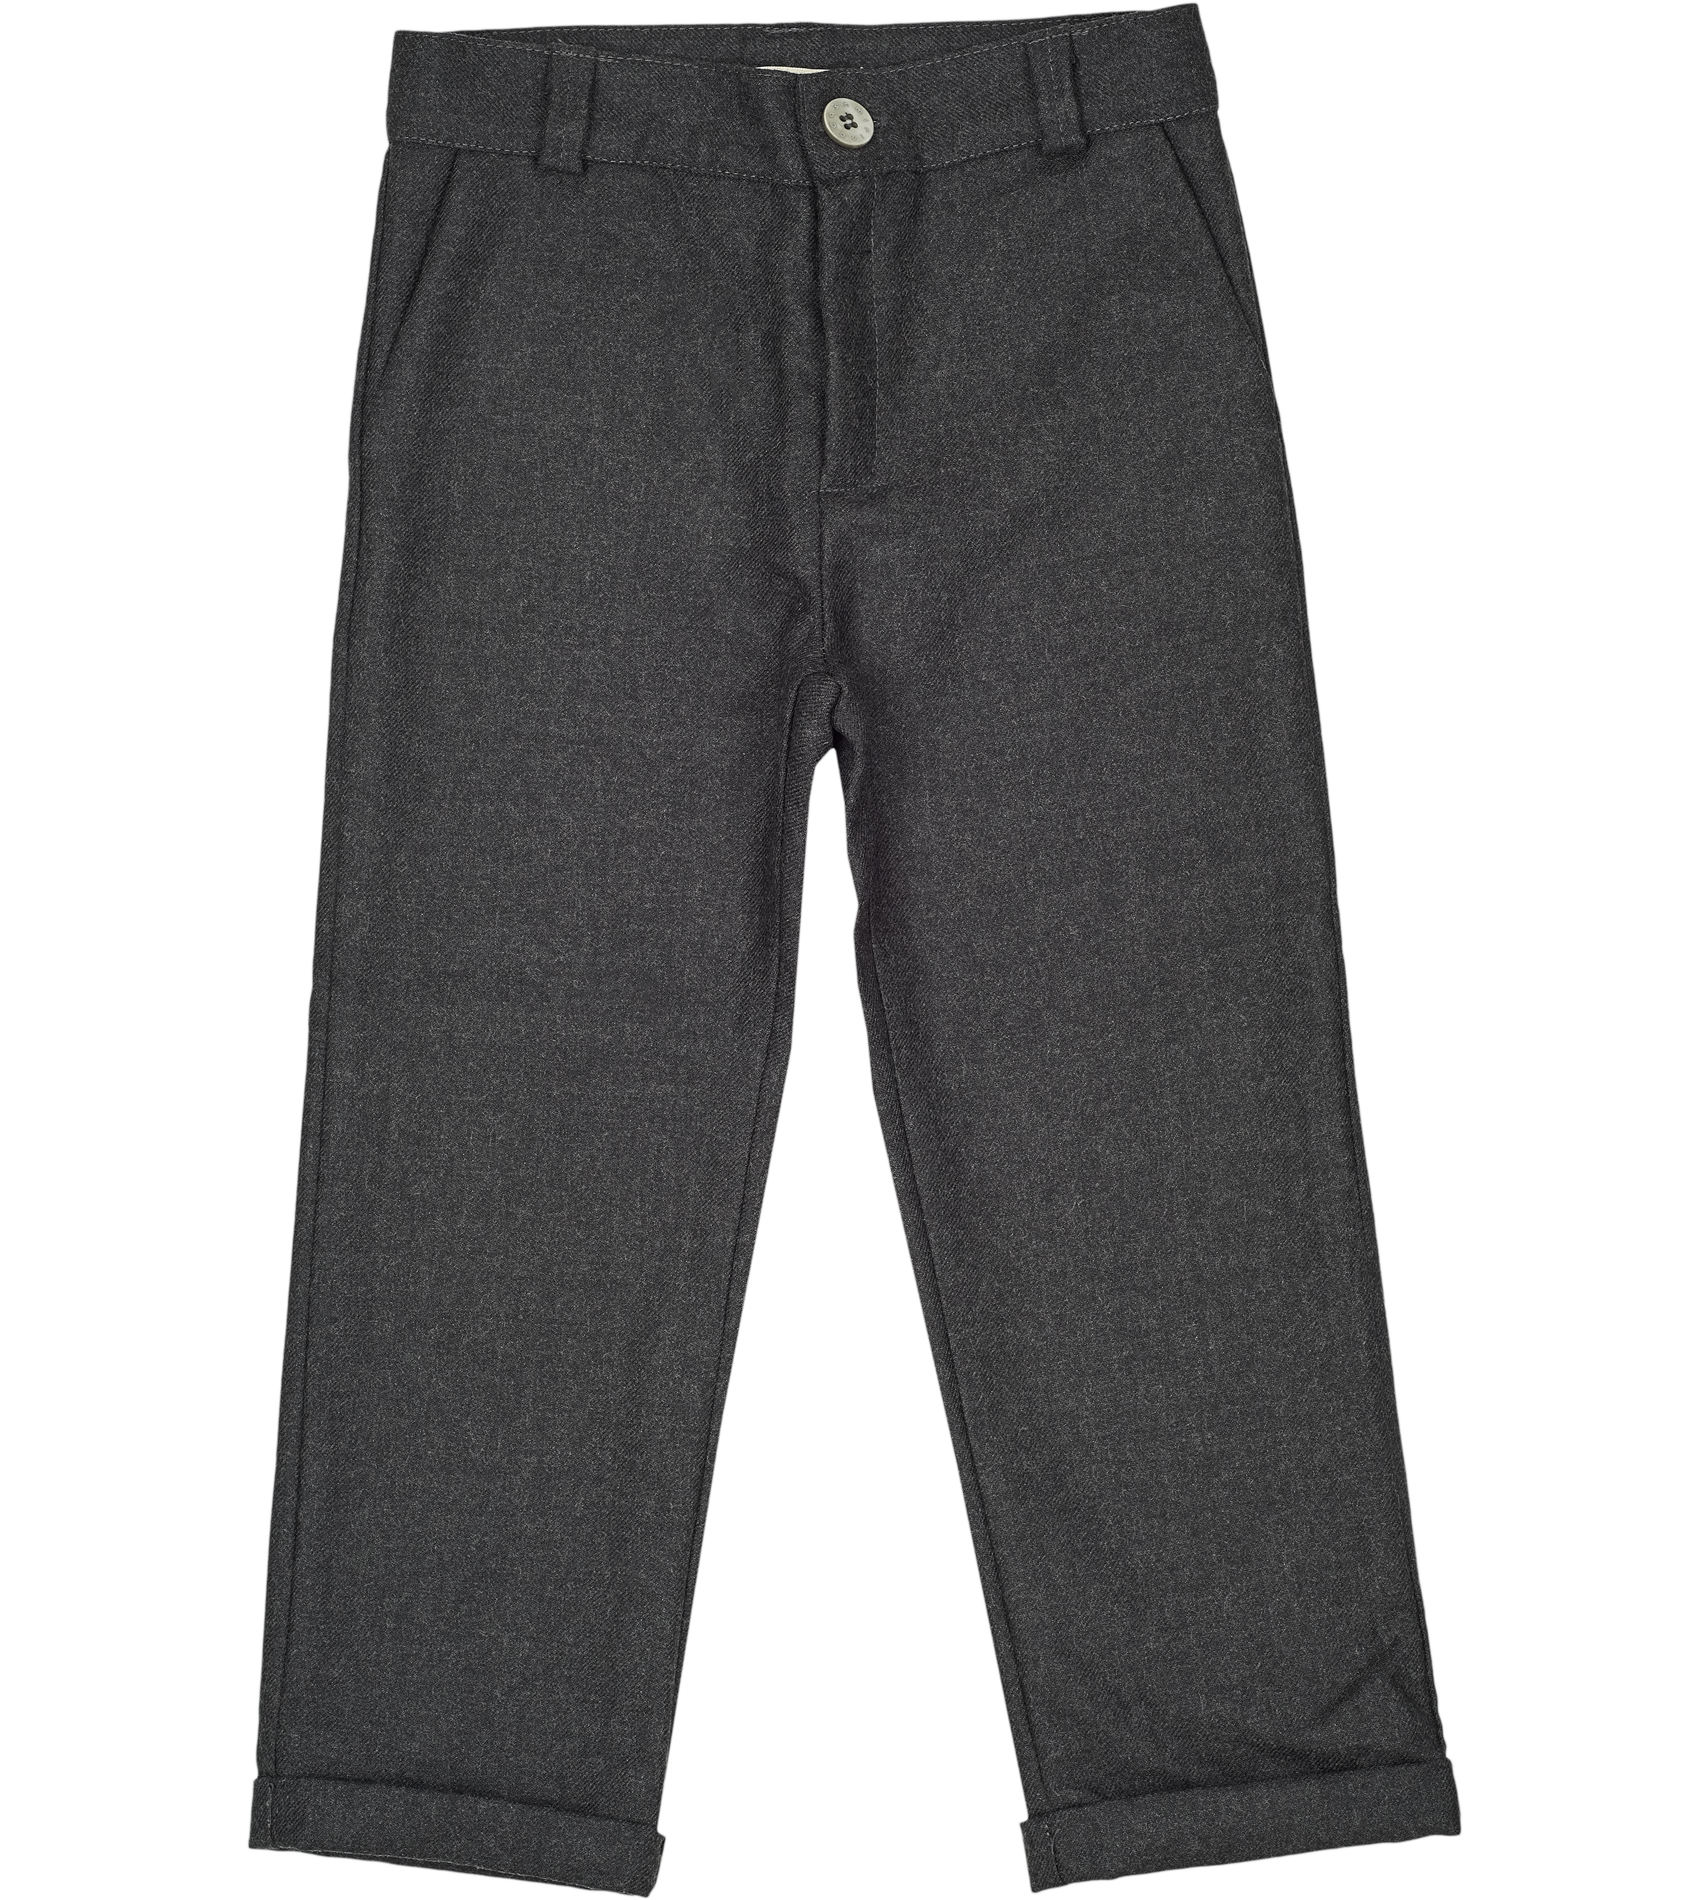 SSM-TR7 – Light Brown Herringbone Trousers - 100% Wool - Suitsurmesur